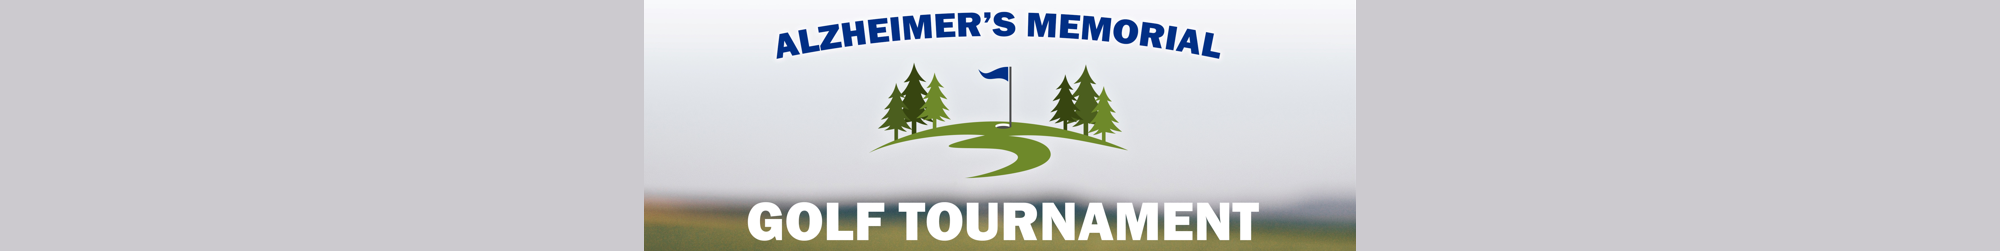 Alzheimer's Memorial Golf Tournament